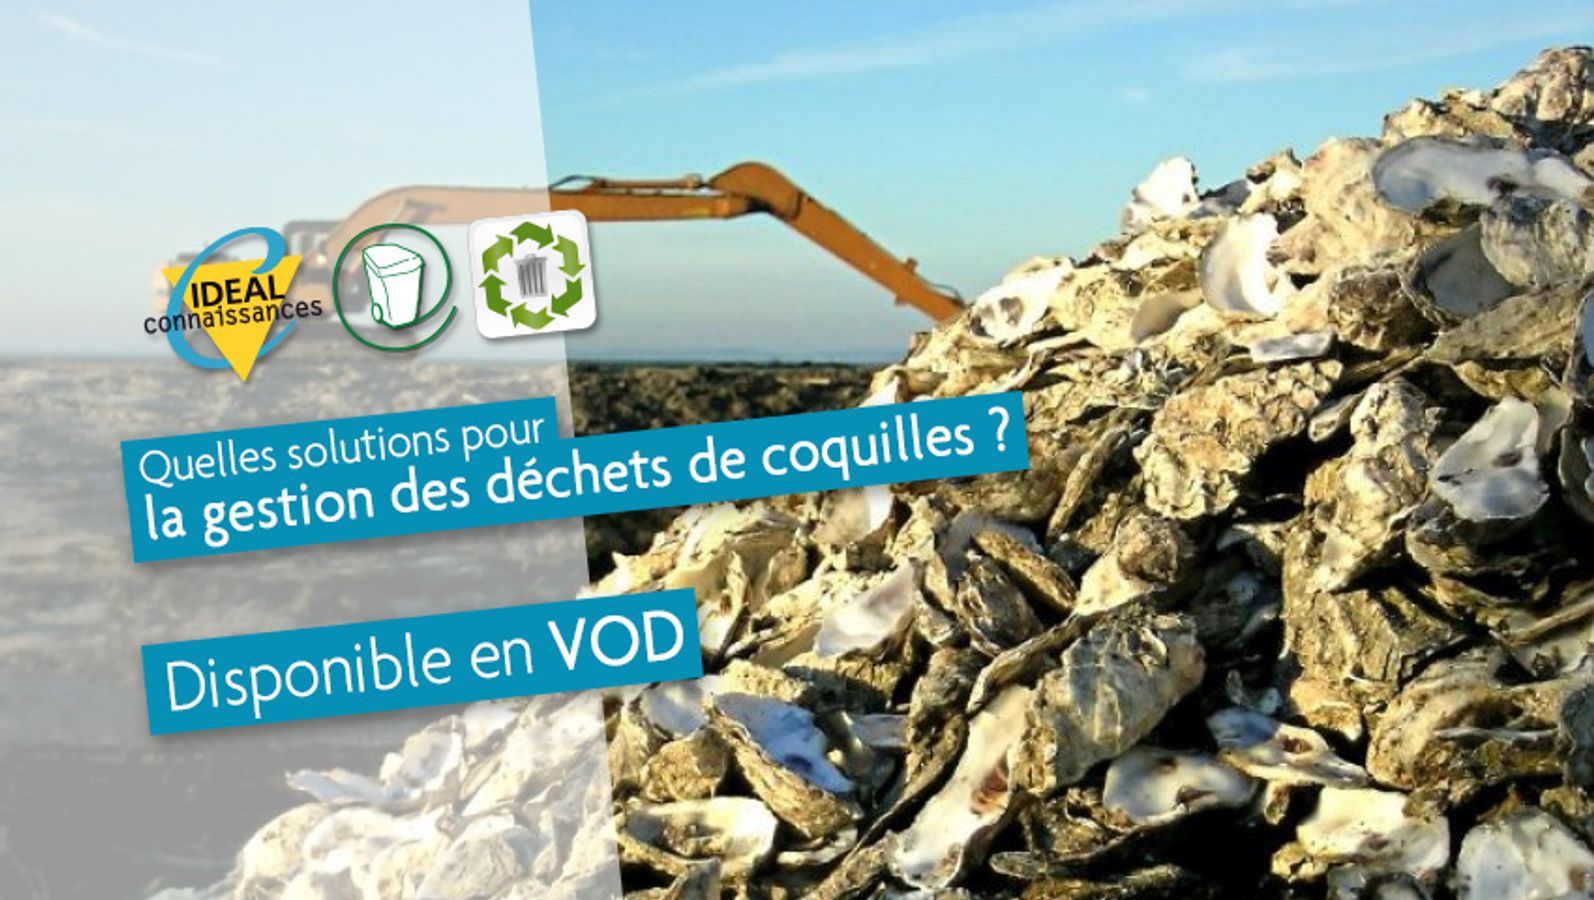 Quelles solutions pour la gestion des déchets de coquilles ?